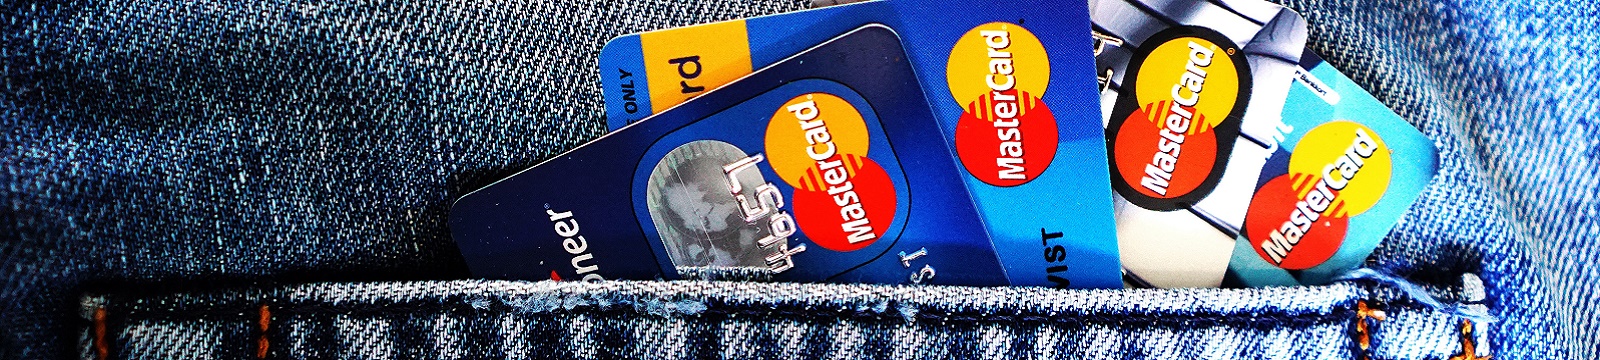 Debit cards in a jeans pocket